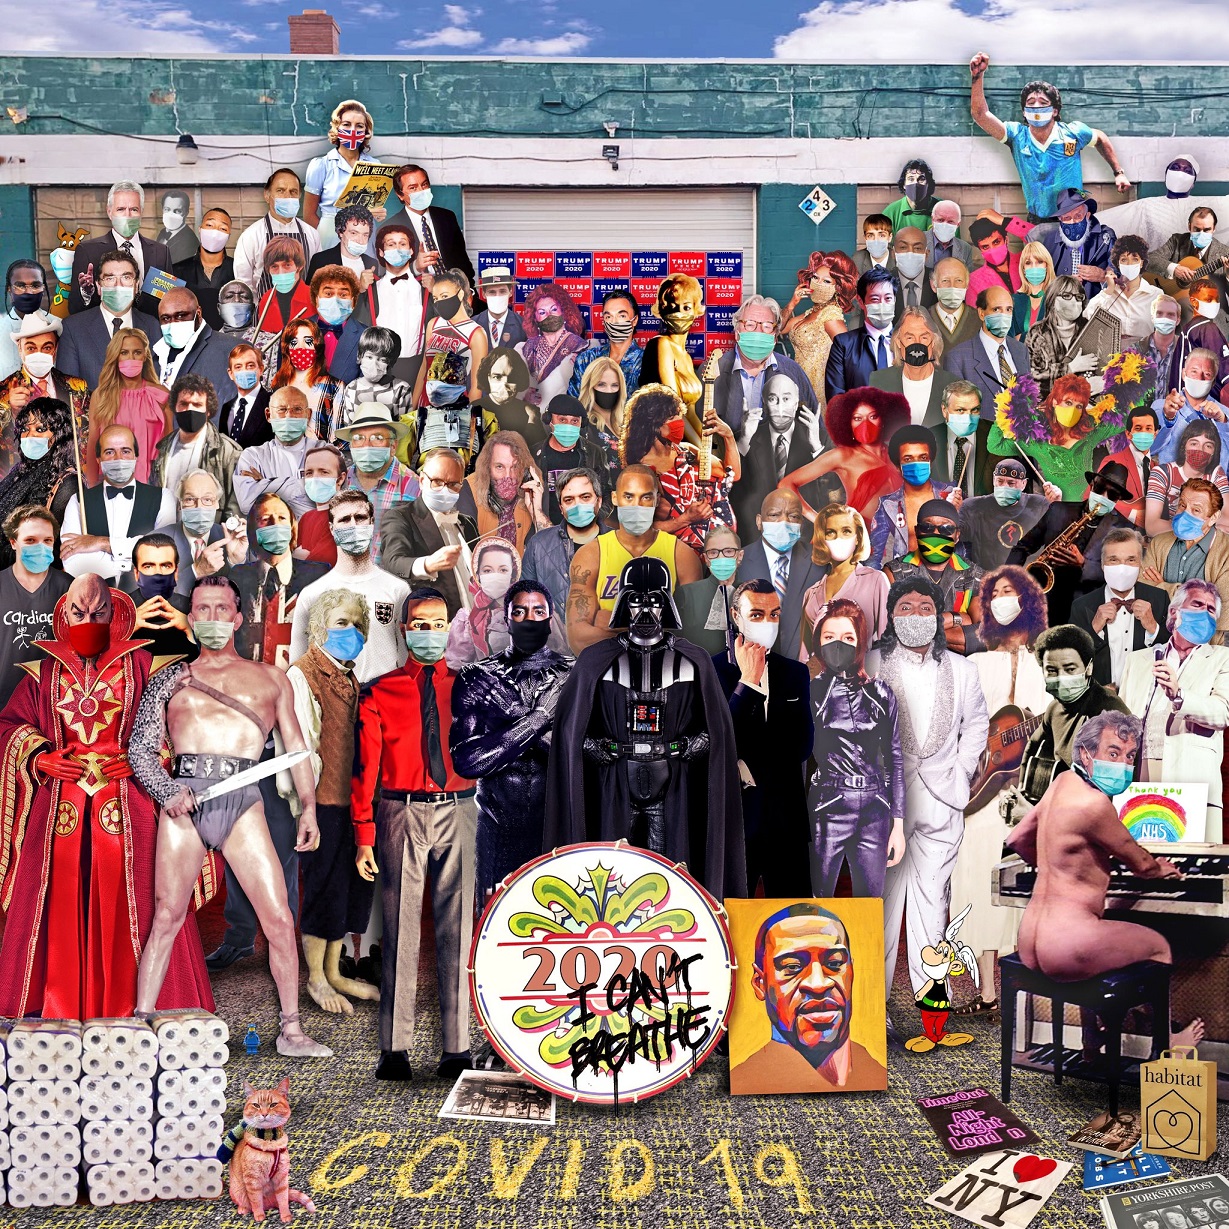 Artista recria capa de ‘Sgt. Pepper’s’ com personalidades que se foram em 2020